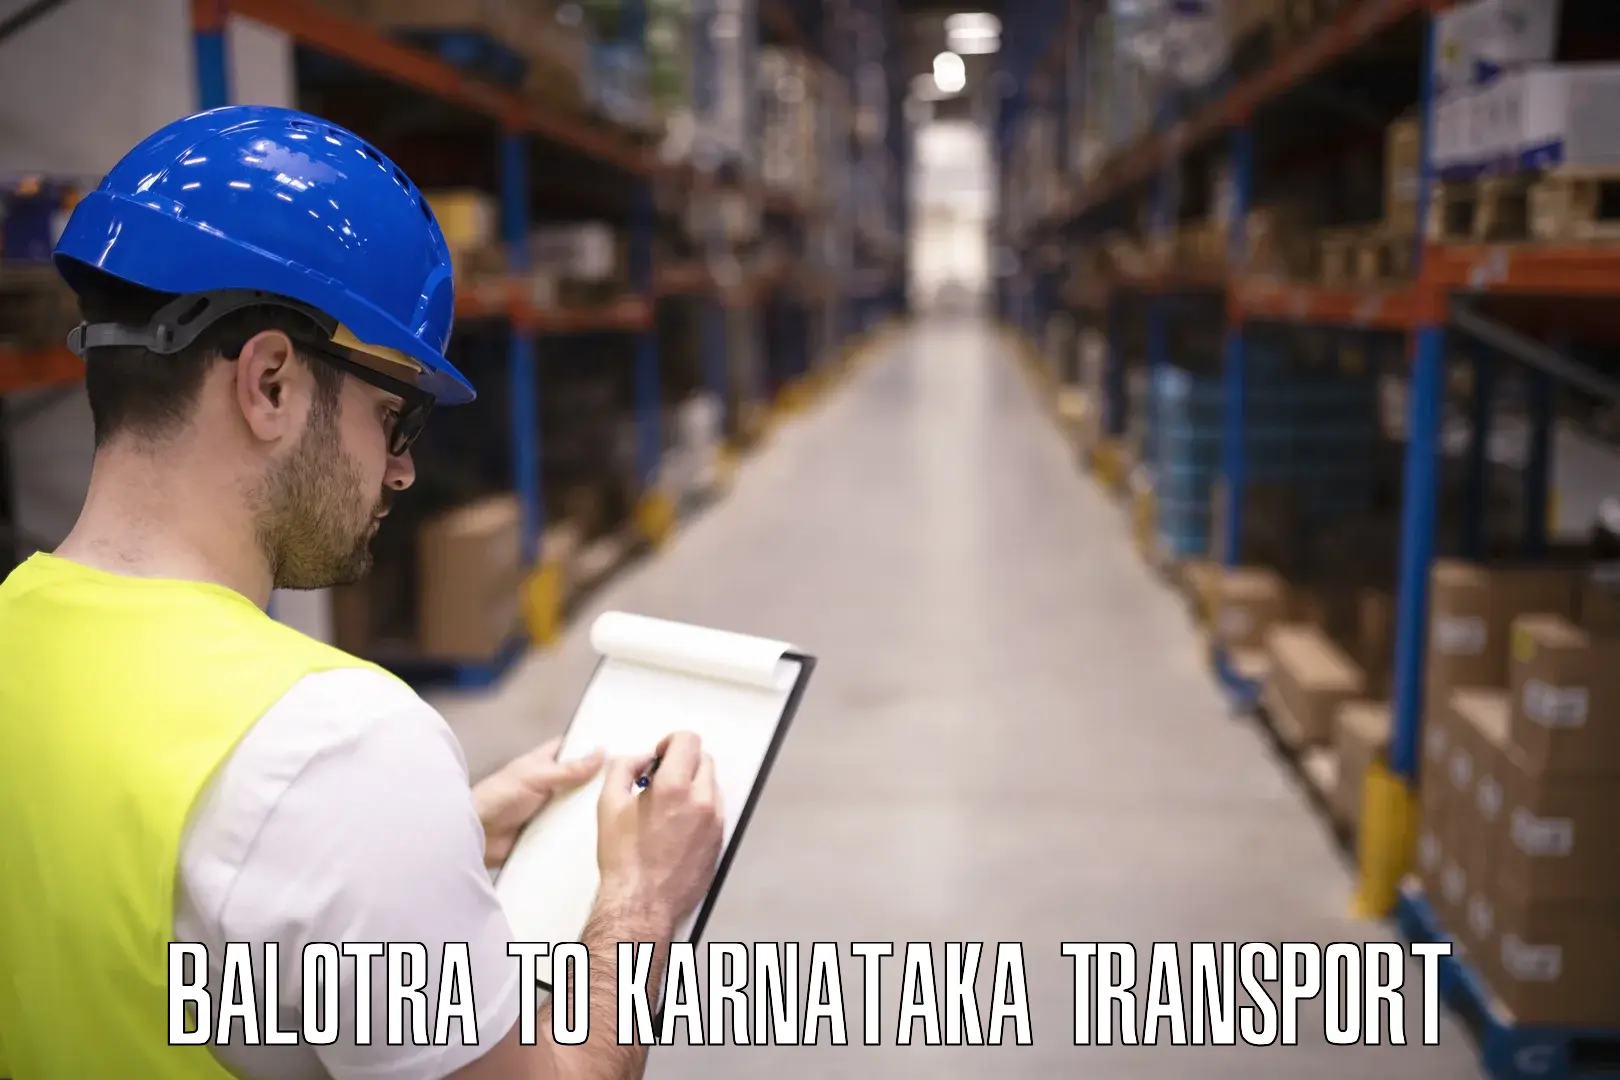 Transport in sharing Balotra to Karnataka